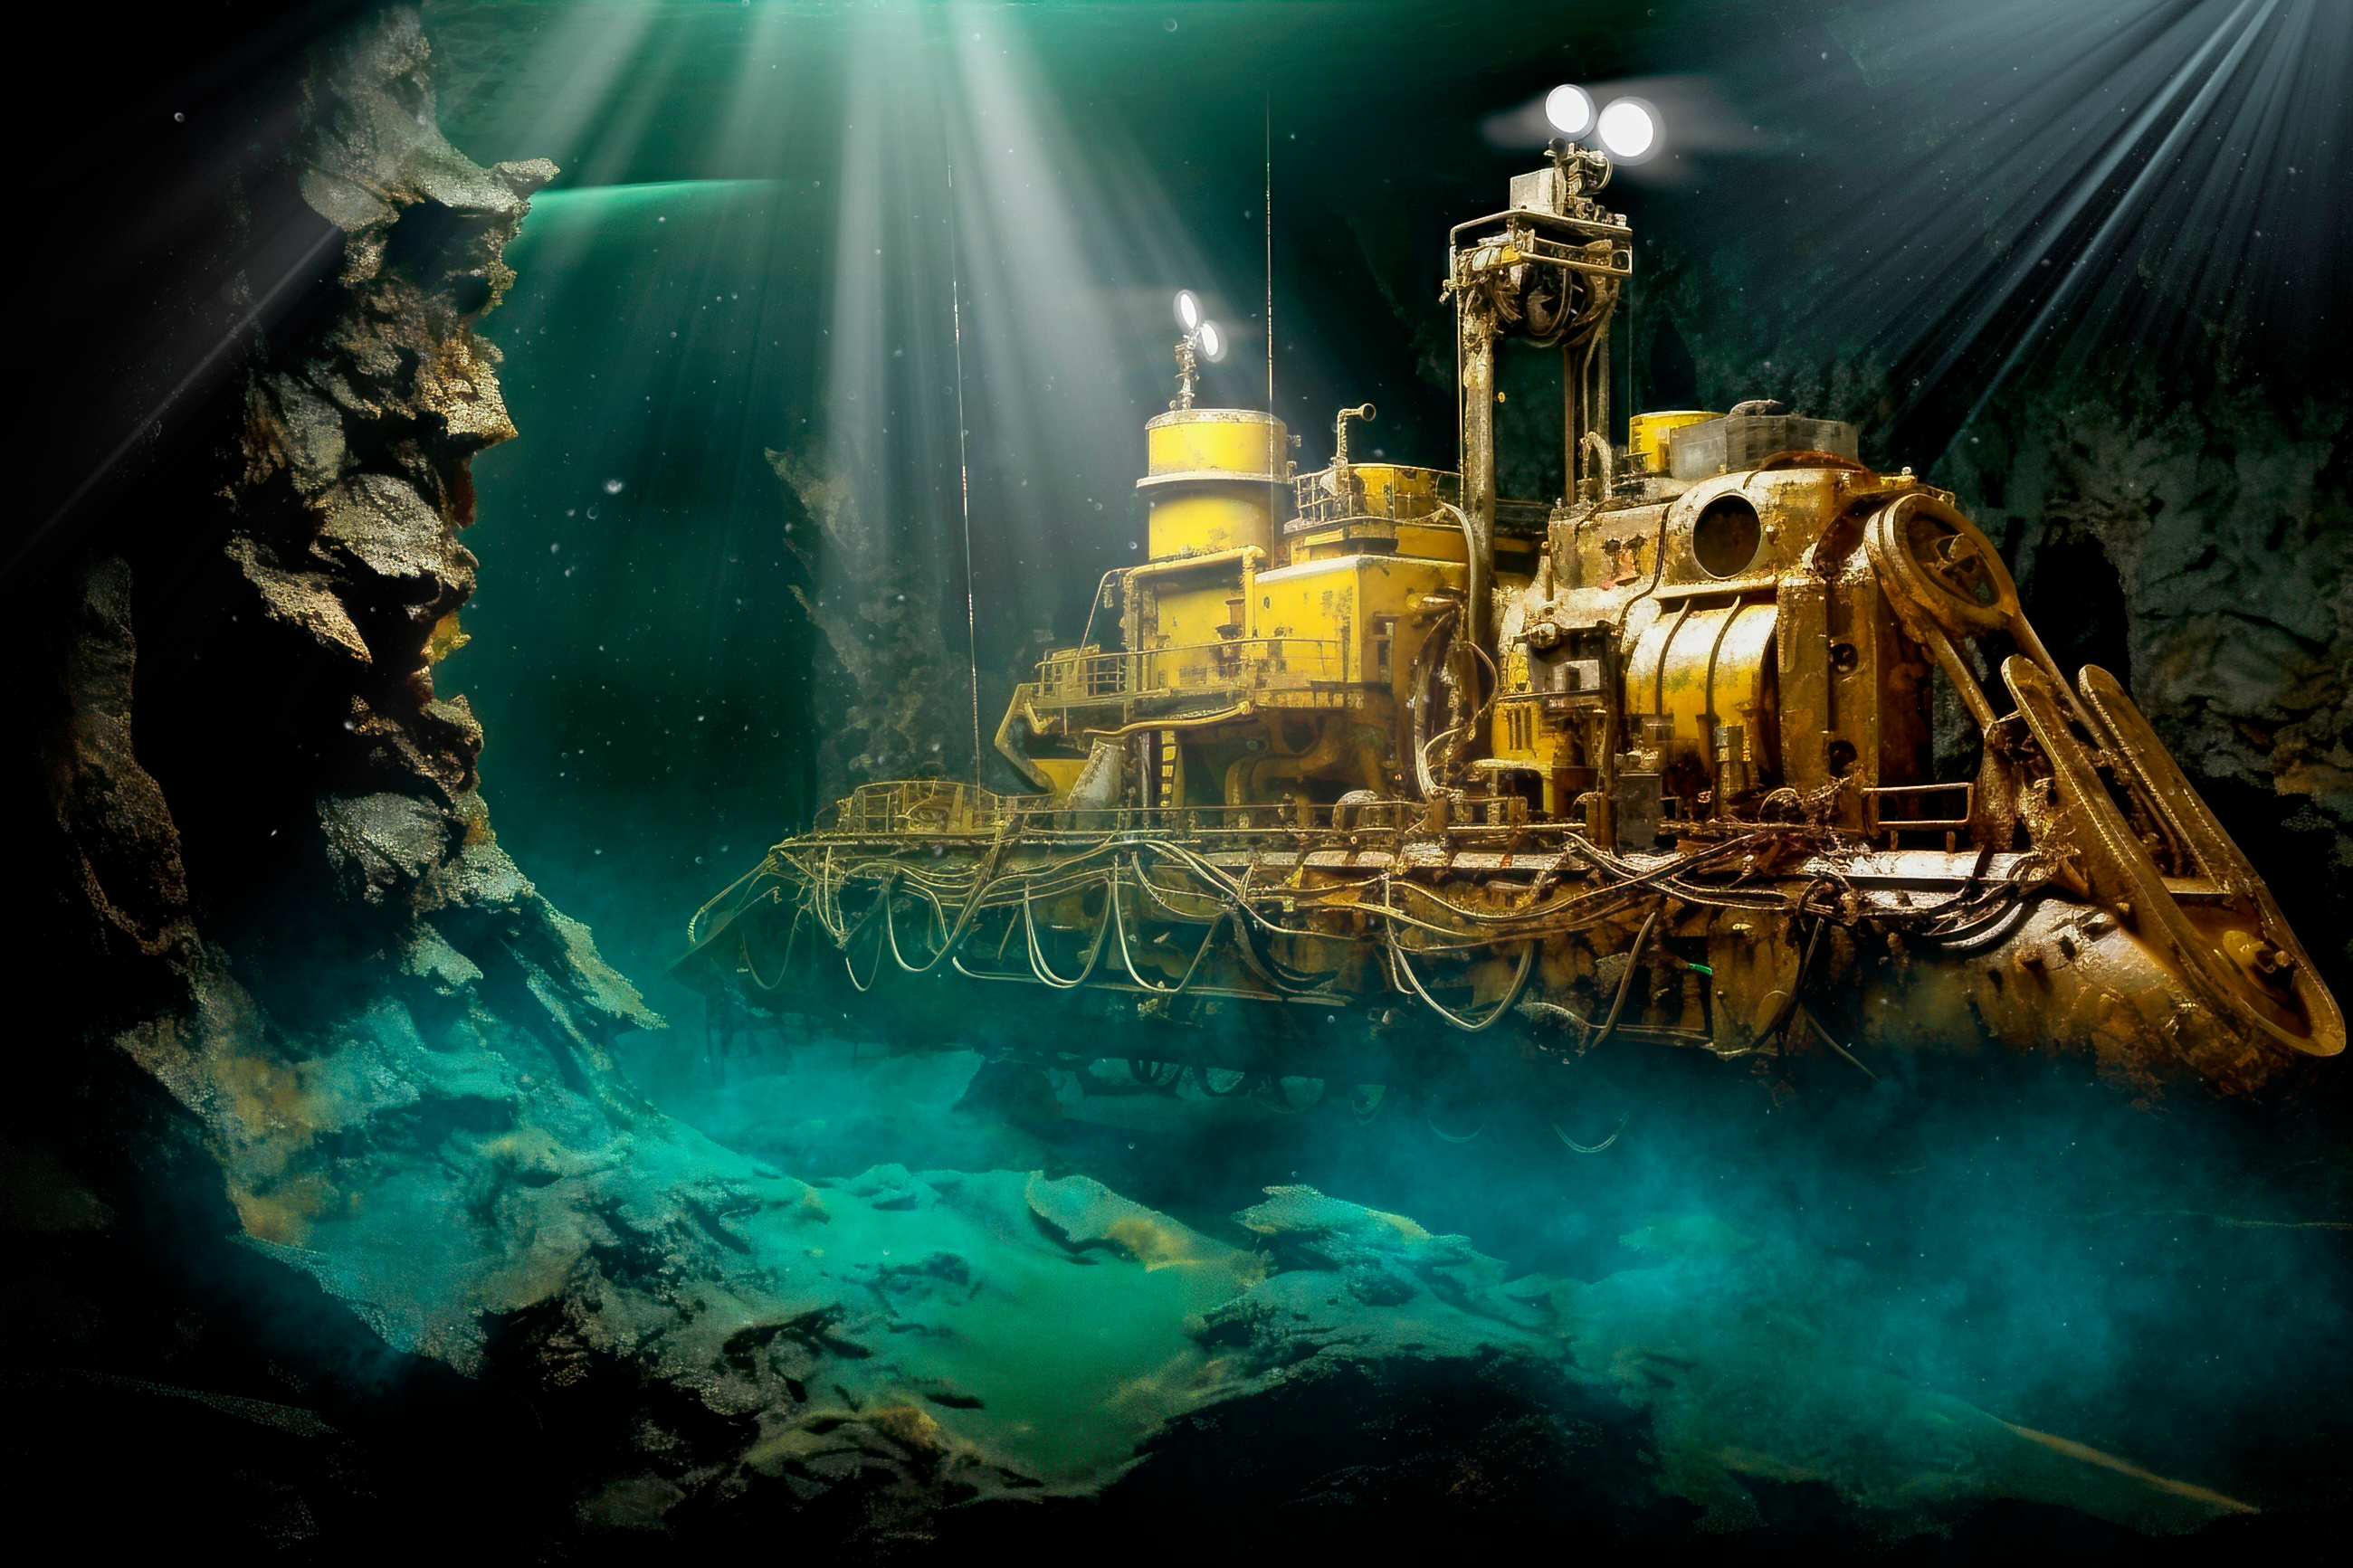 Les abysses intéressent l'industrie minière pour la richesse des gisements de minerais dans le plancher océanique. © The_lightwriter, Adobe Stock